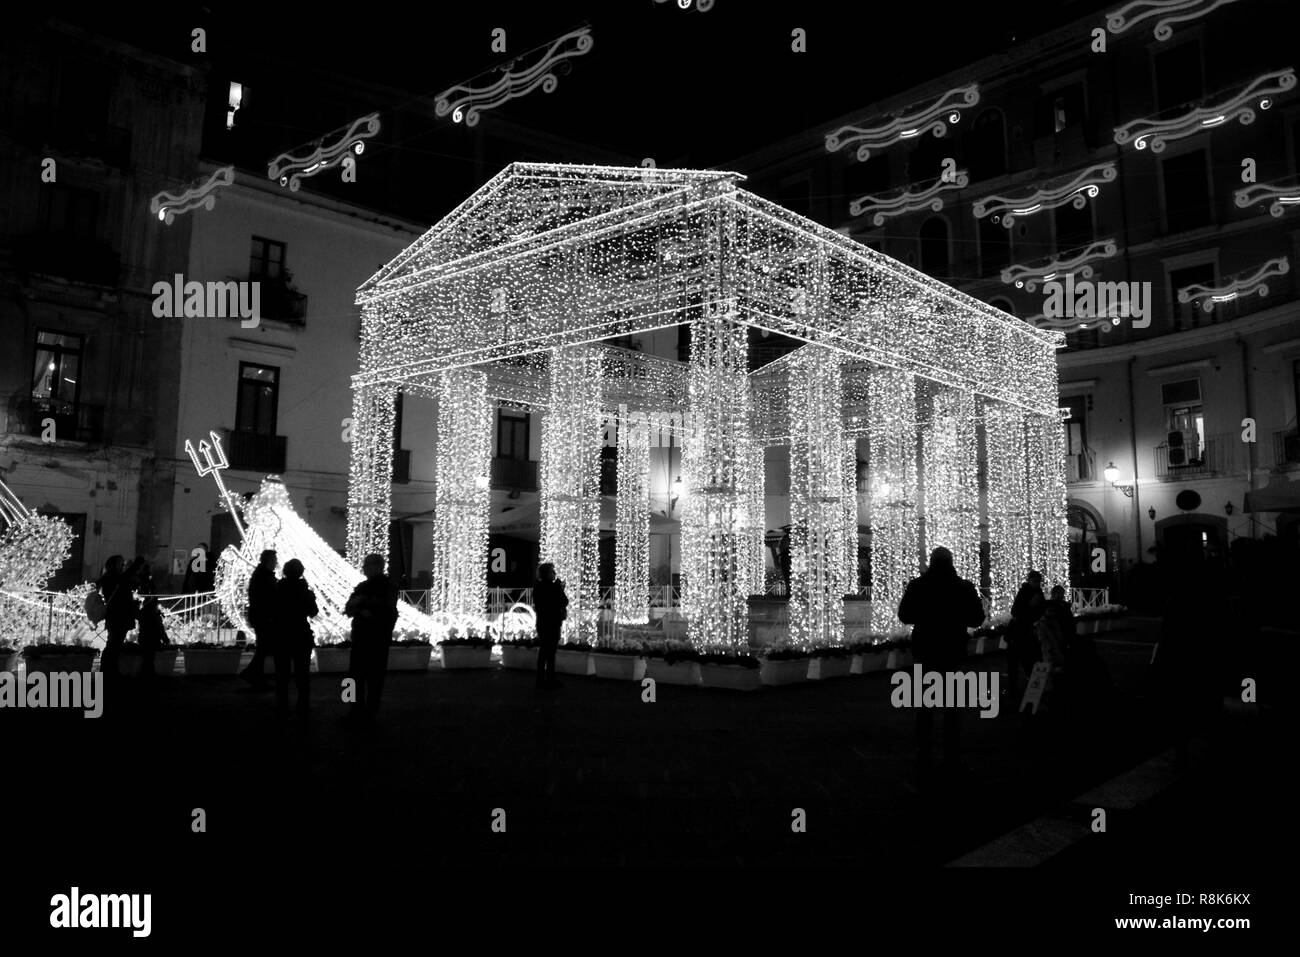 Italien: Die Luci d'Artista, Weihnachtsbeleuchtung in Salerno, Dezember 8,2018 Stockfoto